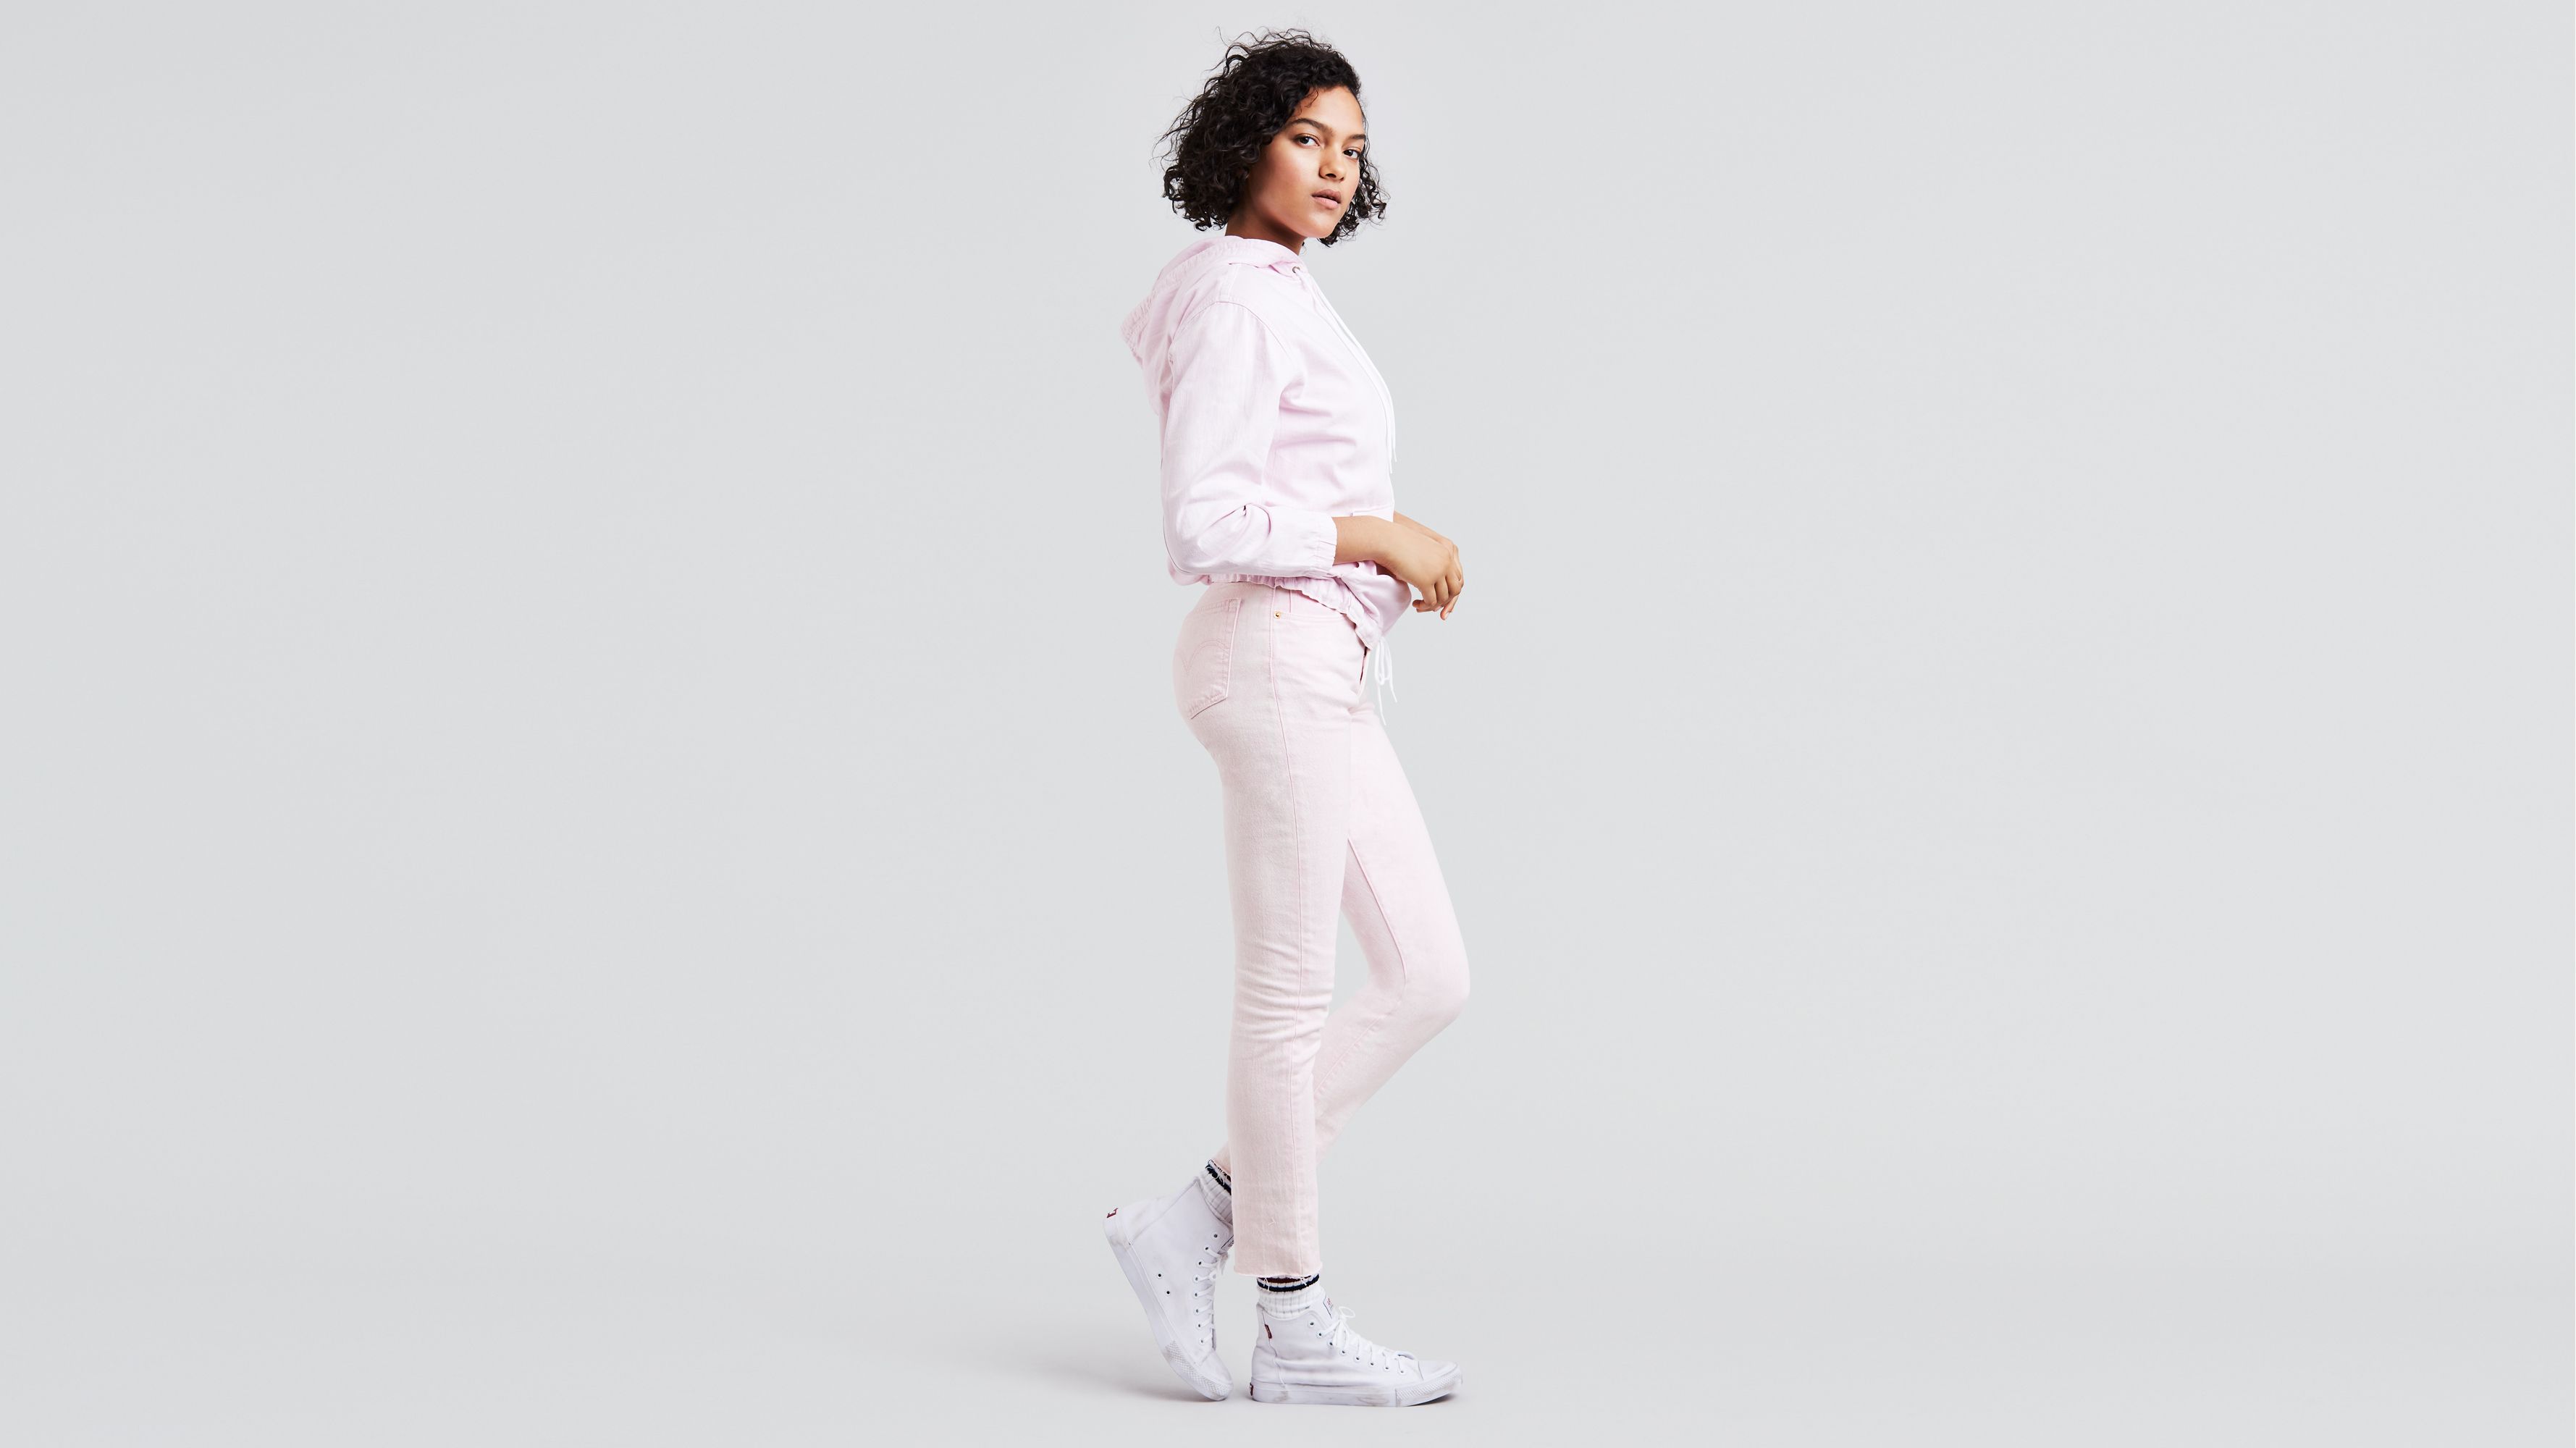 pink levis jeans 501